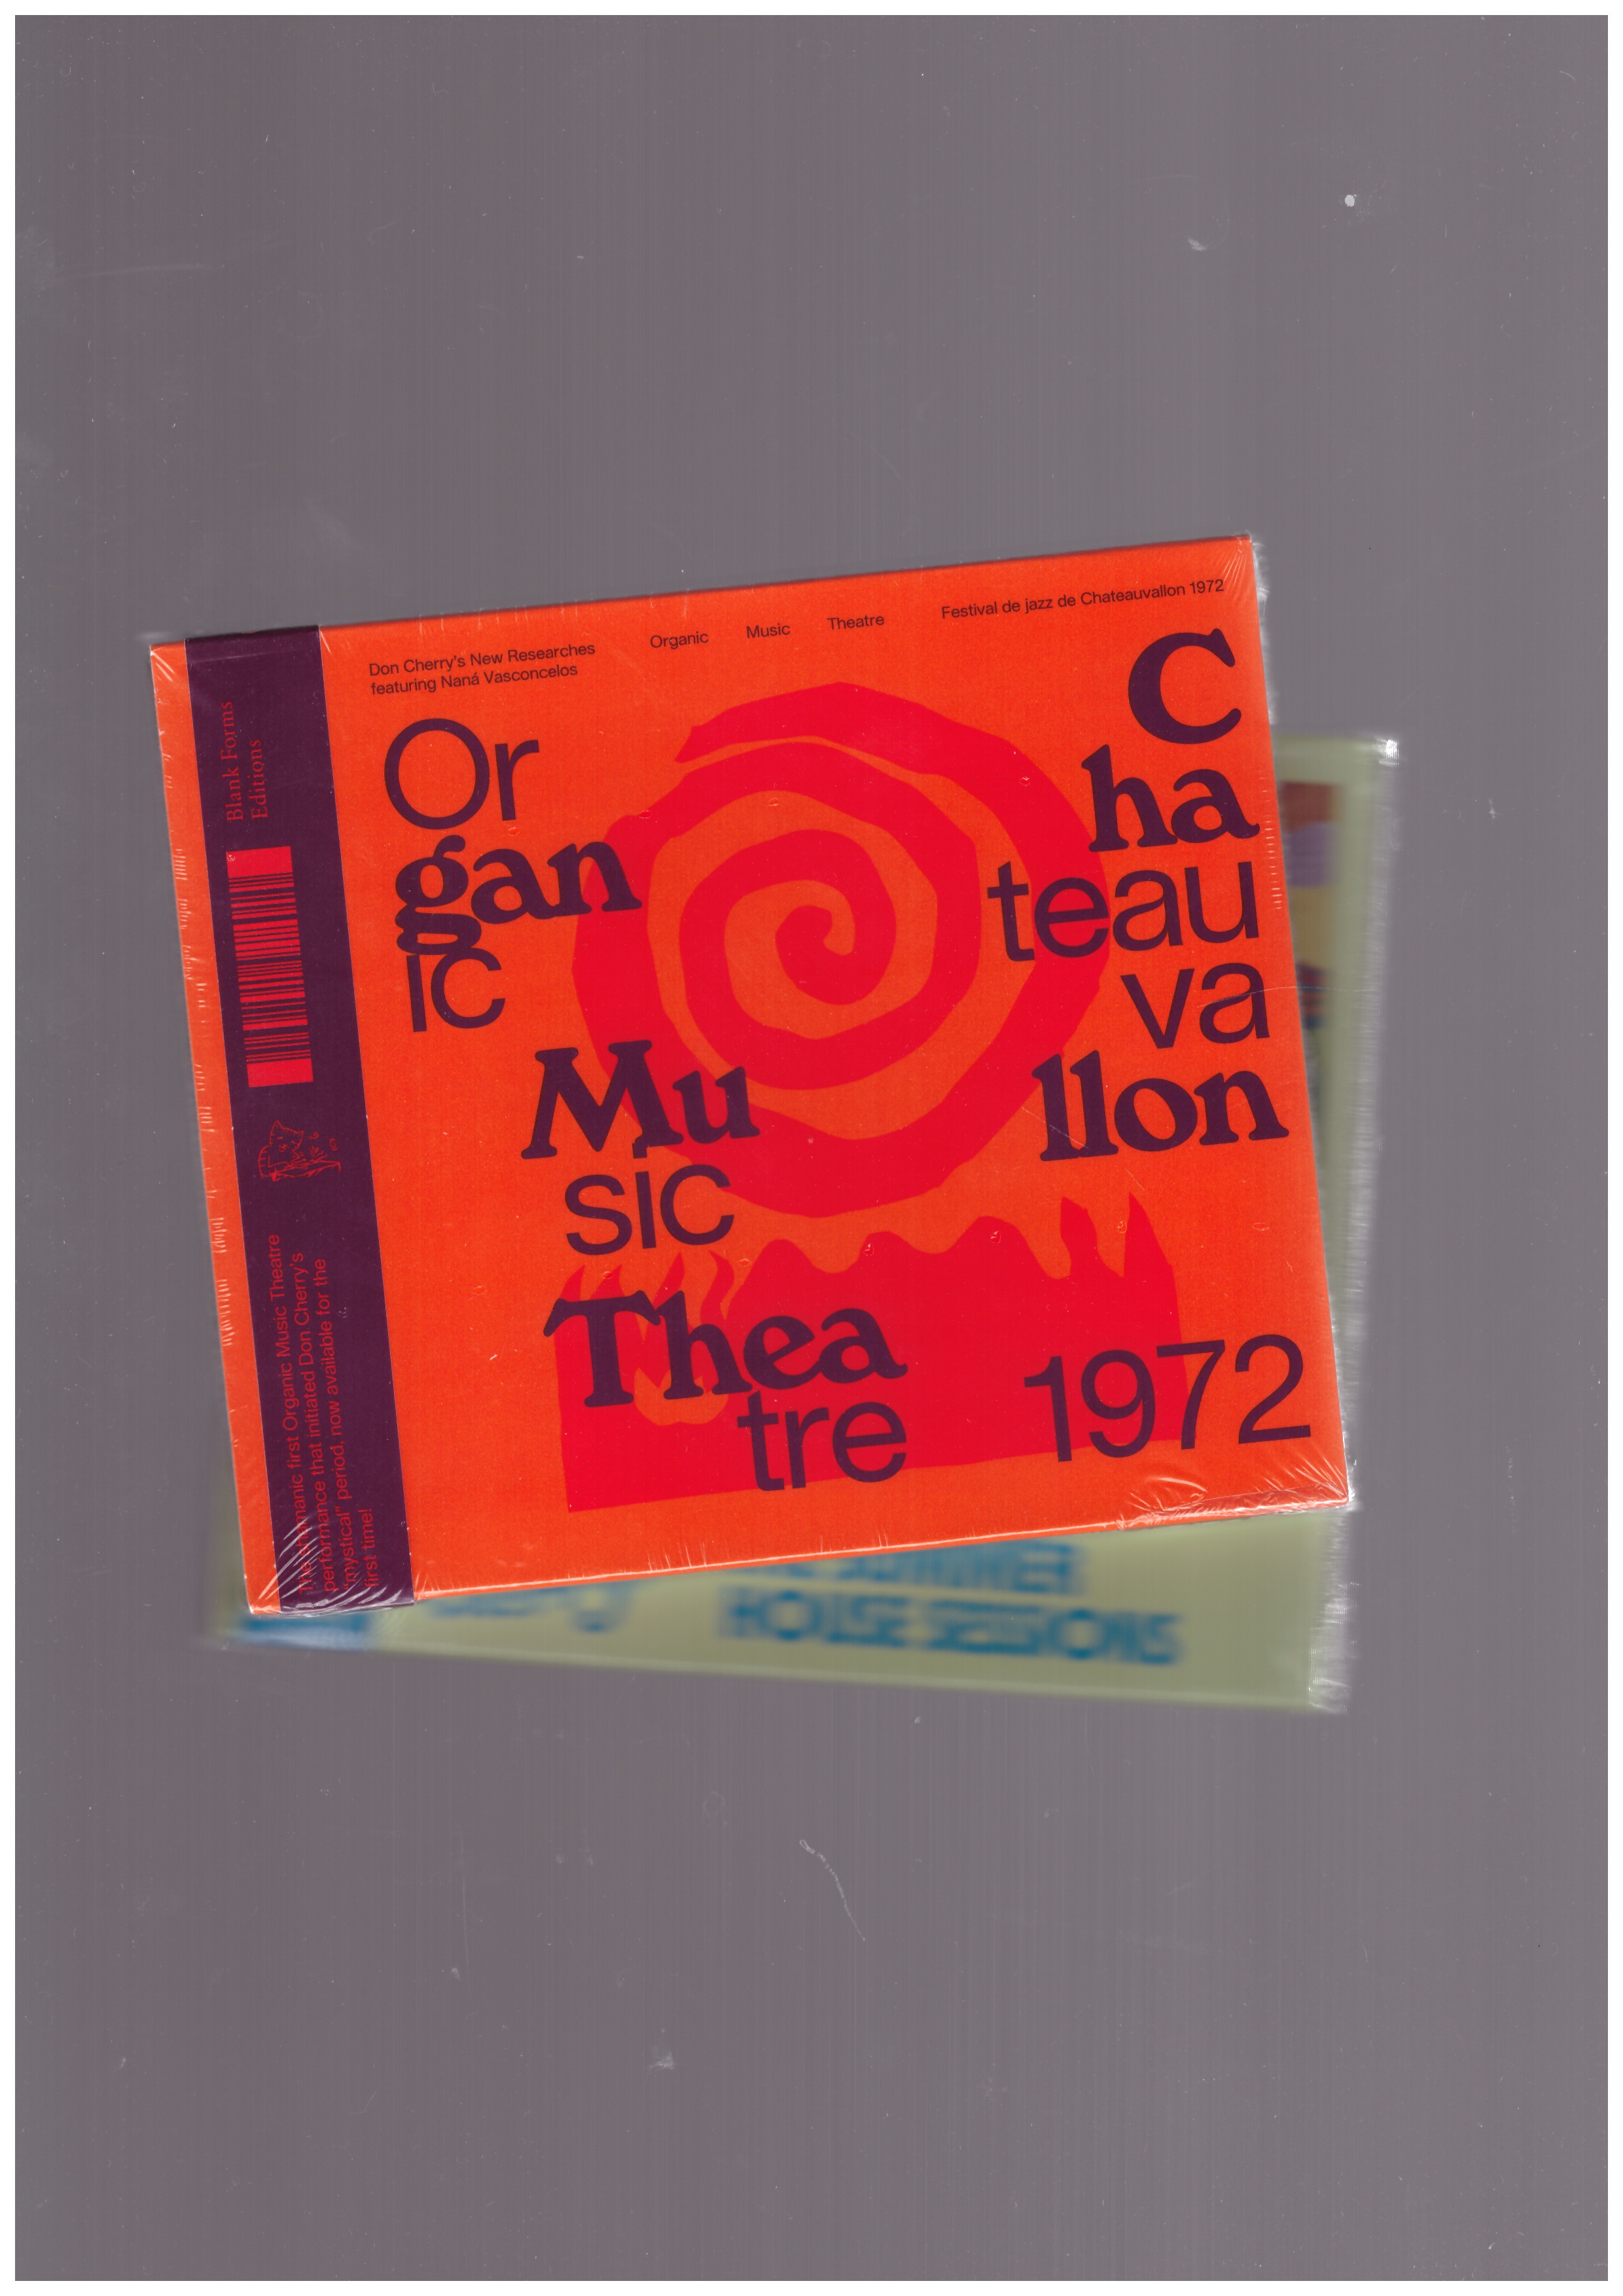 CHERRY, Don - Organic Music Theatre – Festival de jazz de Chateauvallon 1972 [CD]